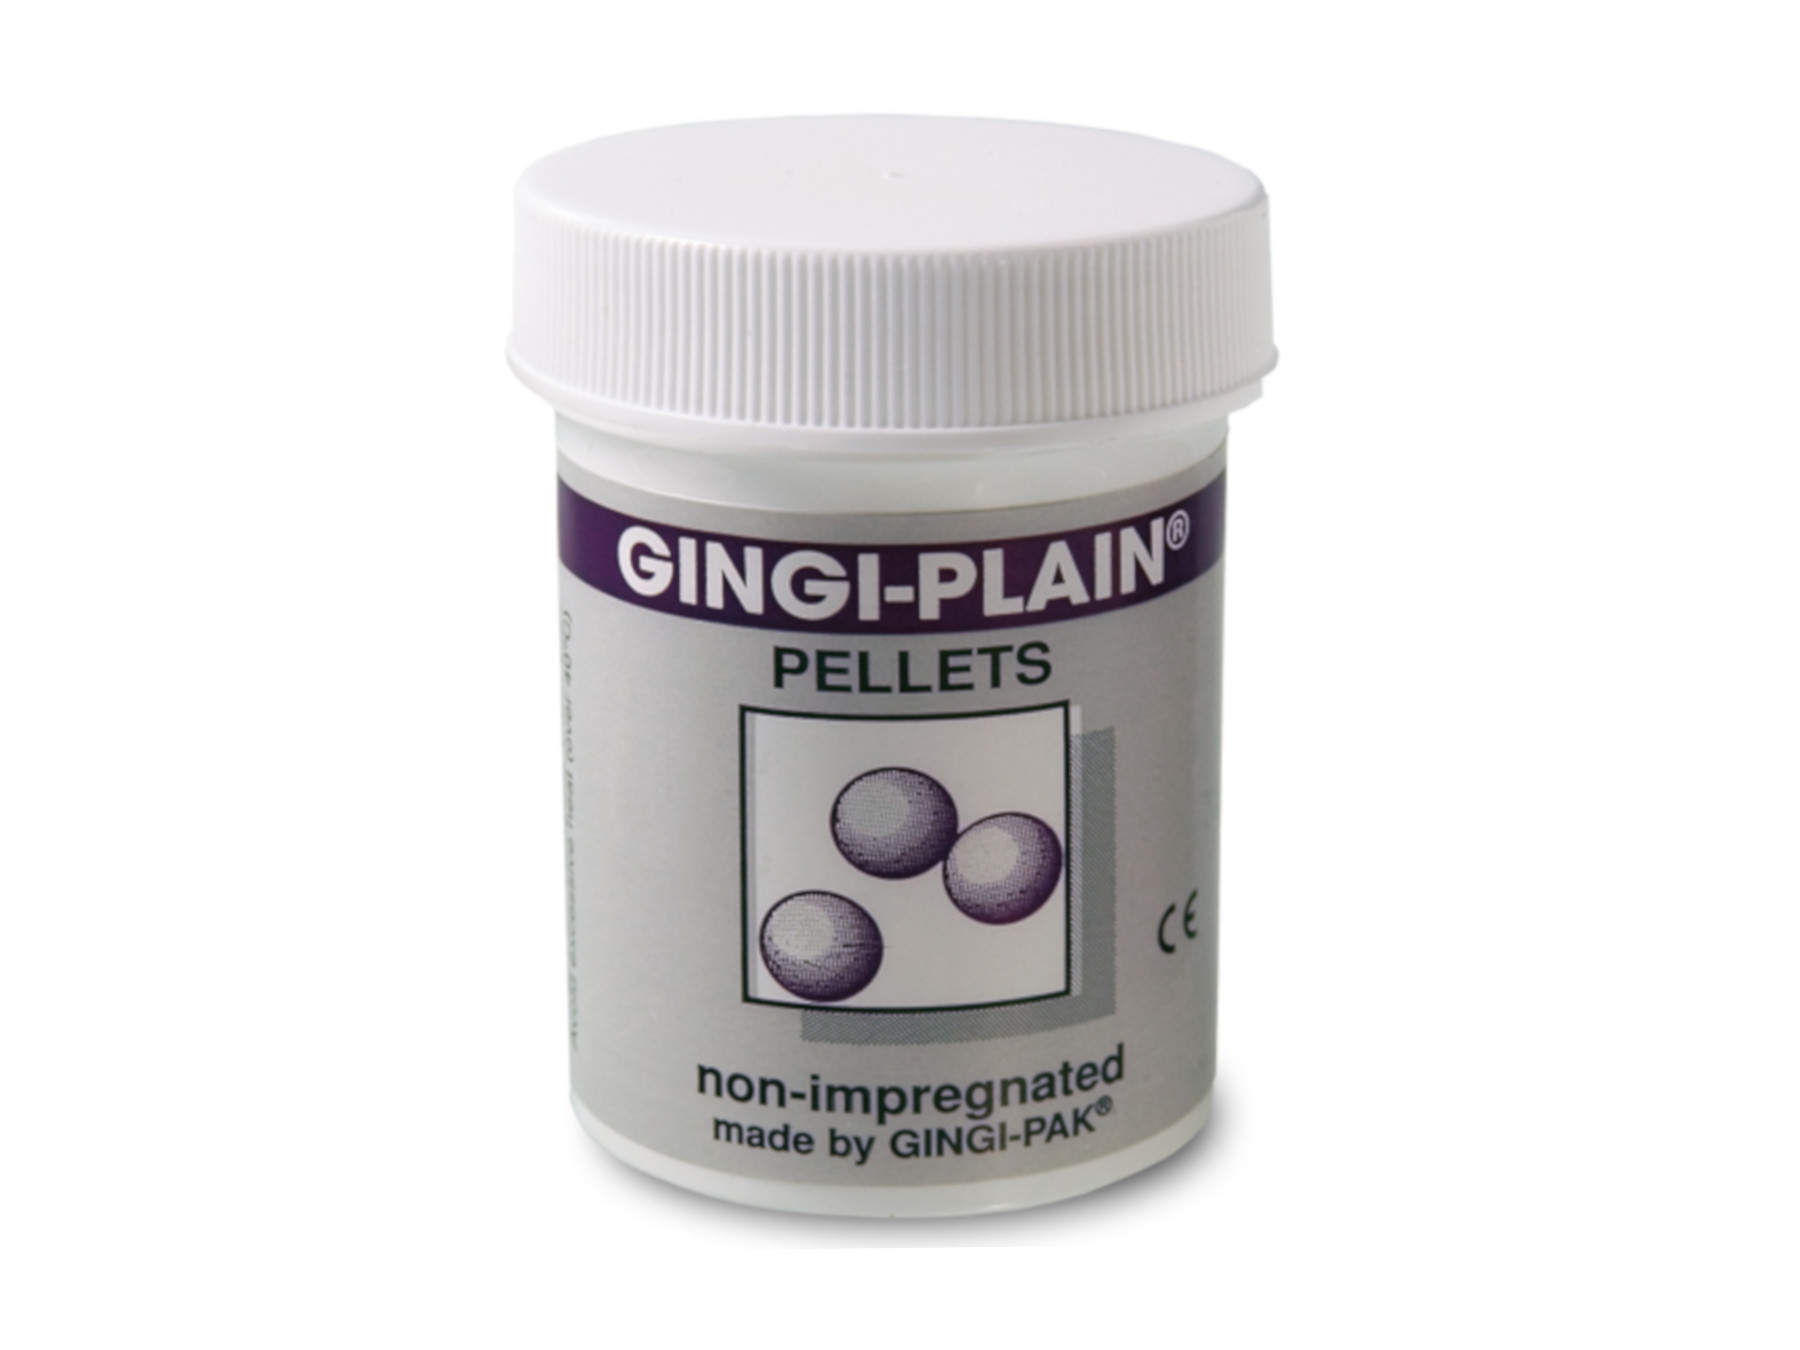 Gingi-Plain® Pellets